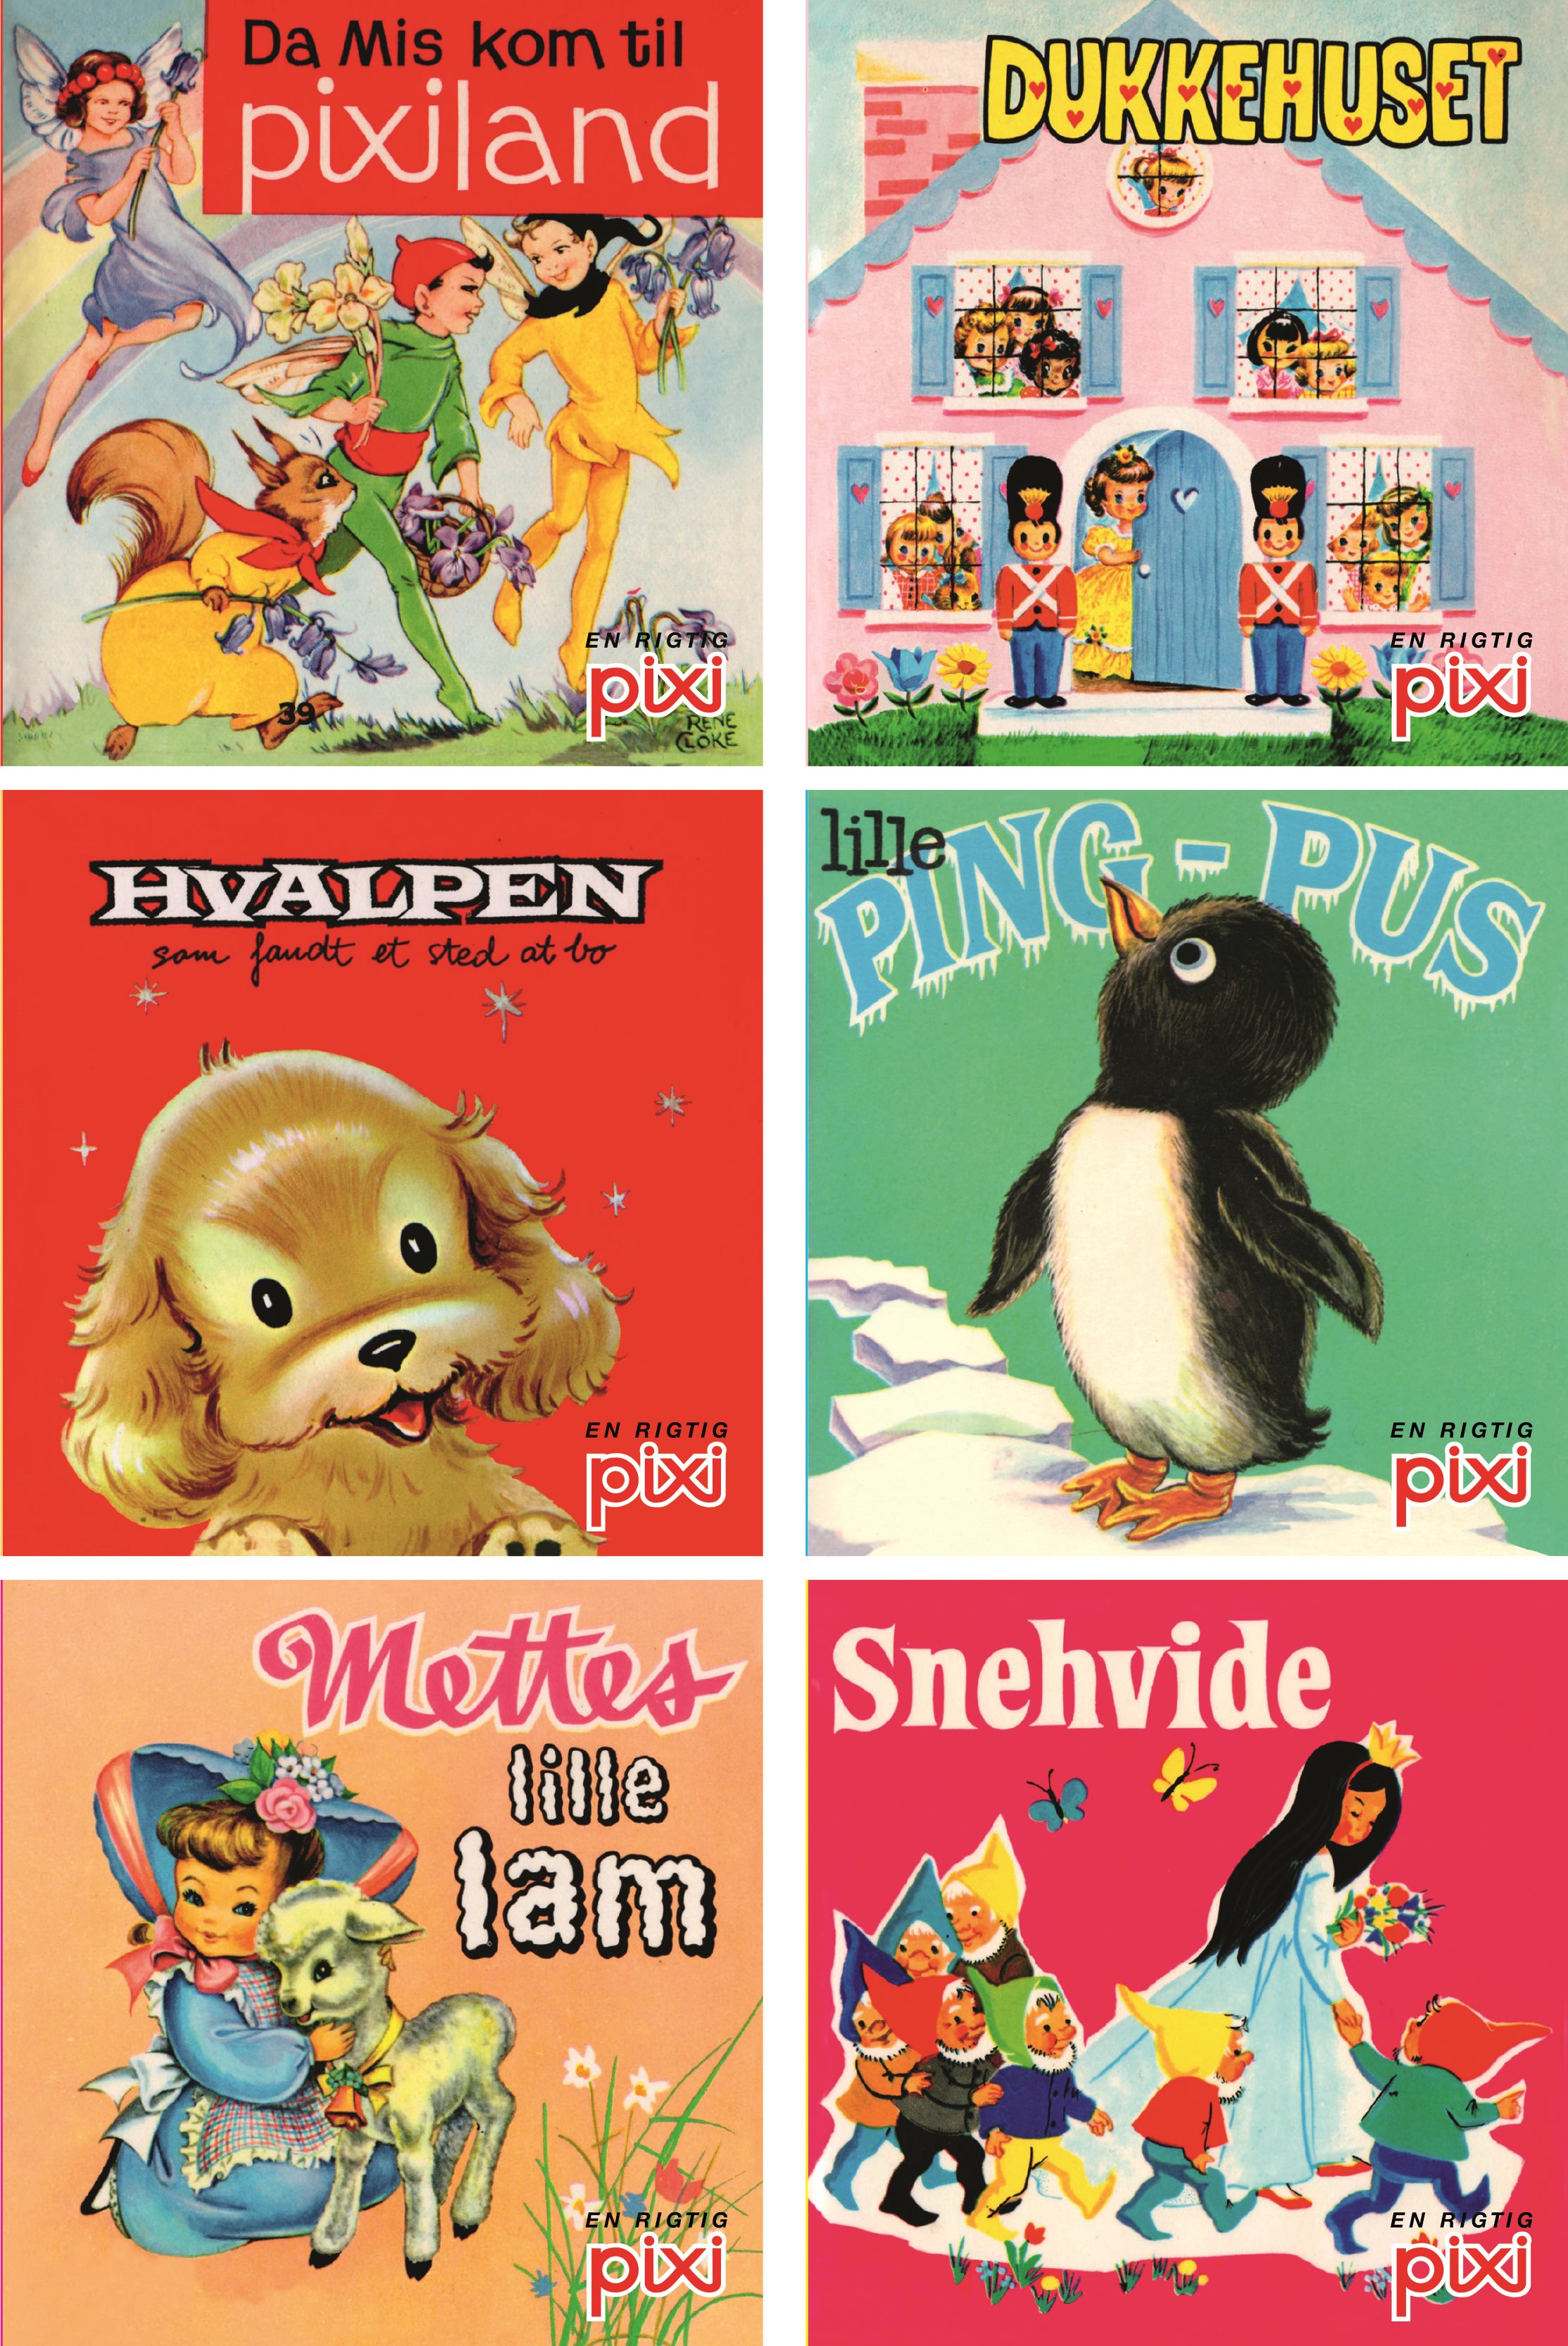 Pixi nostalgi, pixi, pixi-bog, pixi-bøger, nostalgi, børnebøger, forlaget carlsen, carlsen, børnebog